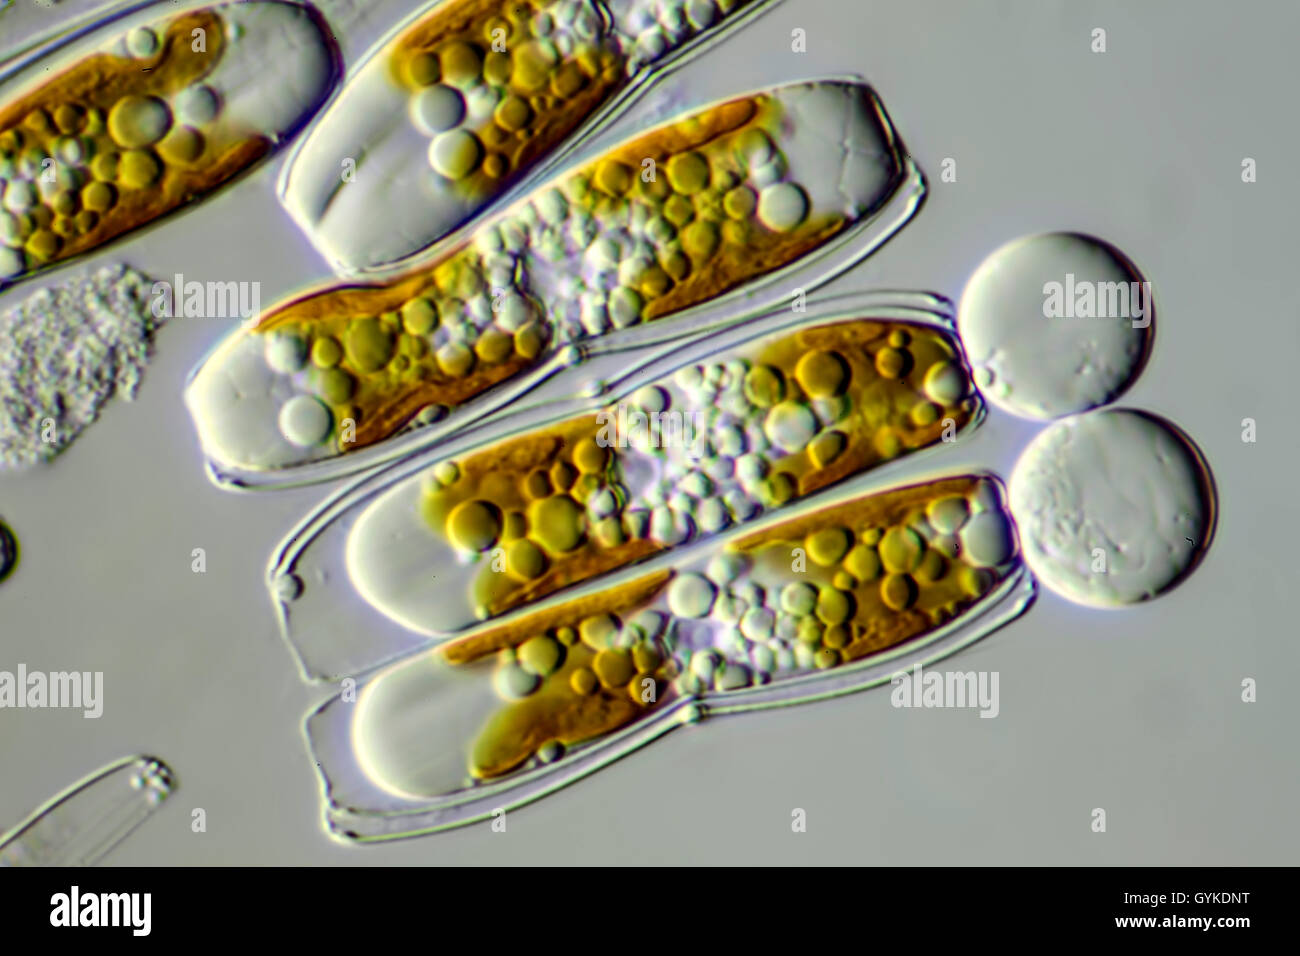 Kieselalge, Kiesel-Alge, Diatomee (Diatomeae), lebende Kieselalgen | diatom (Diatomeae), living diatoms | BLWS419012.jpg [ (c) b Stock Photo